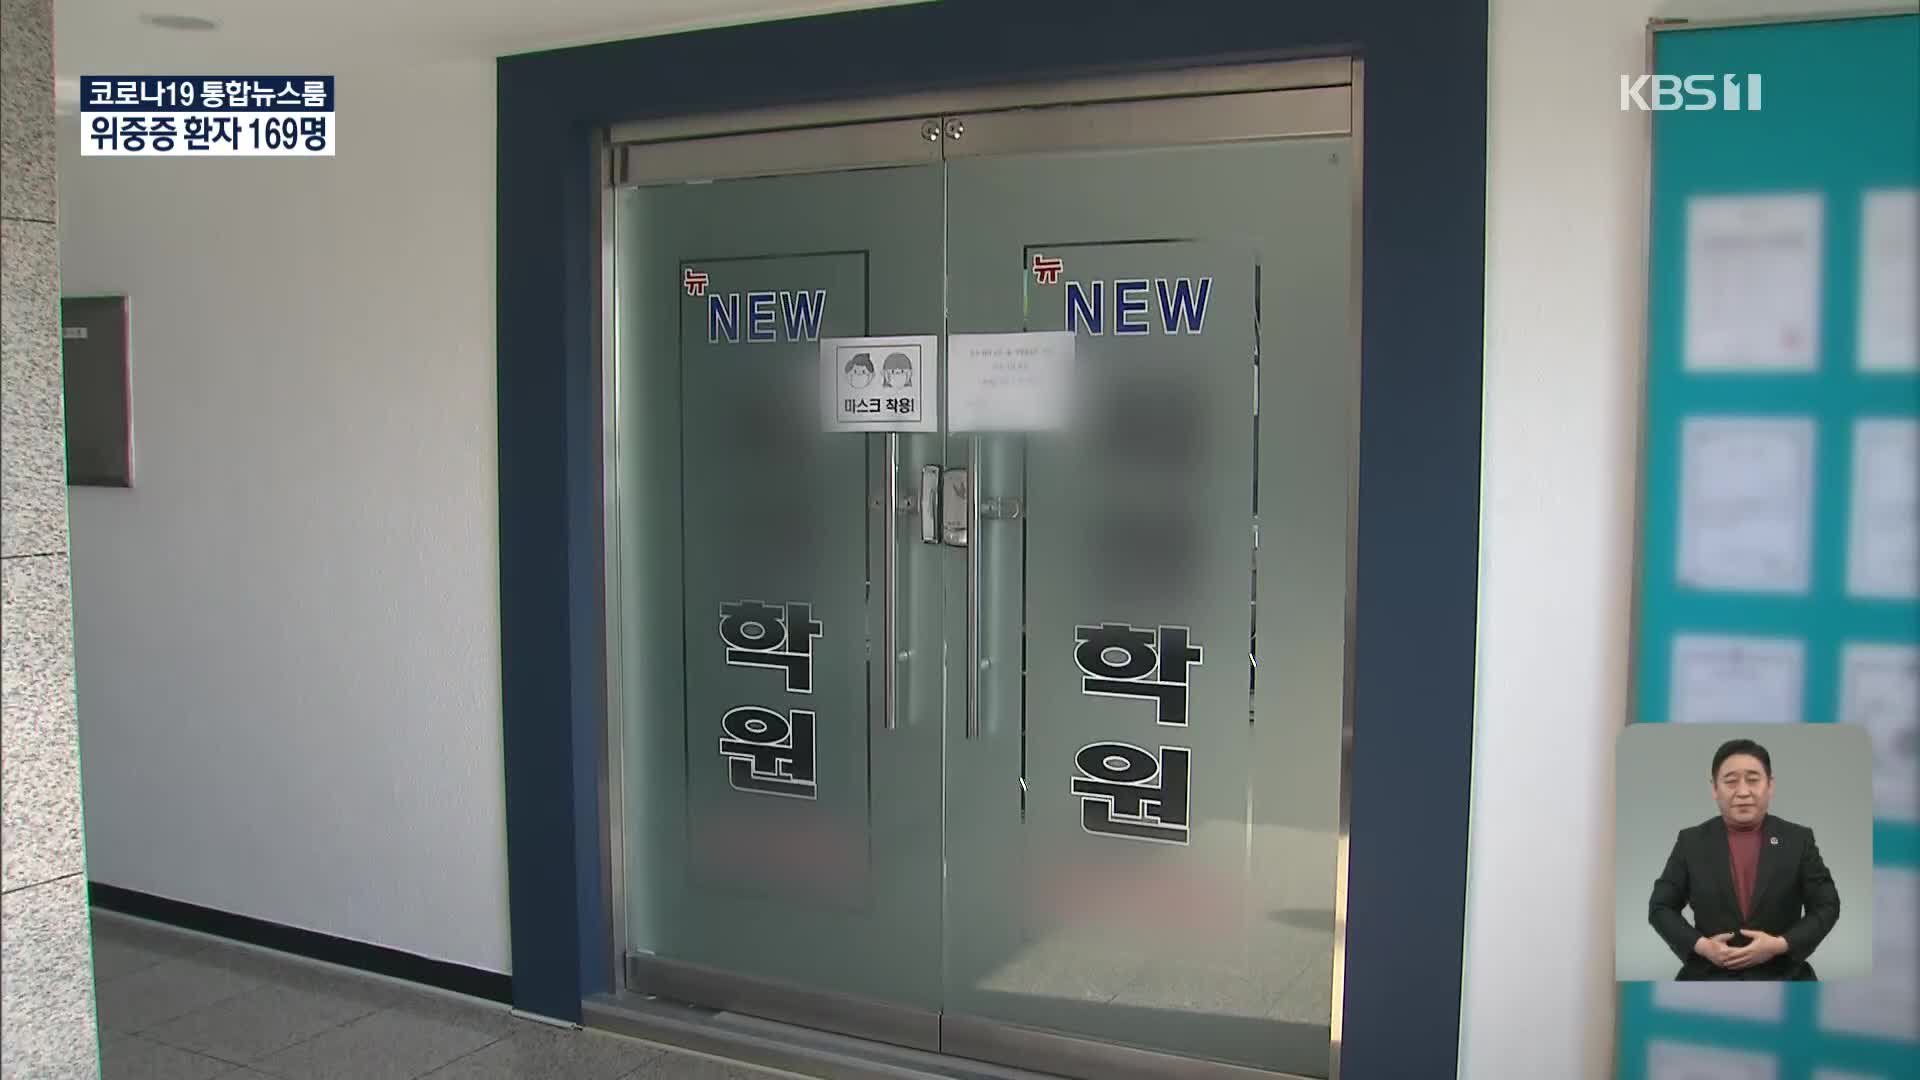 서울 40여 일 만에 최다…송파구 학원 18명 집단감염